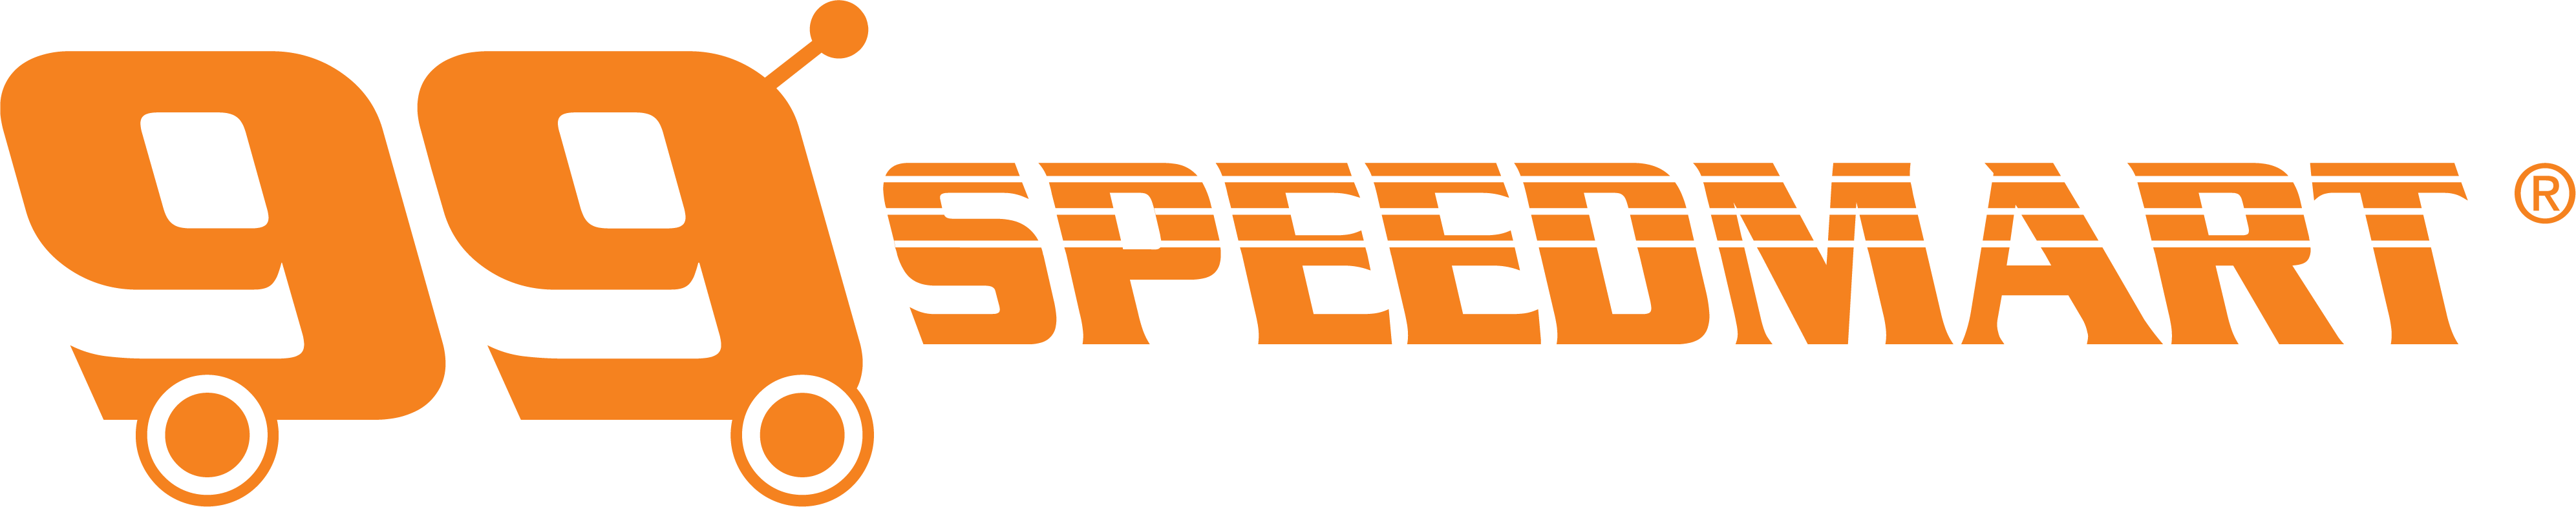 99 speedmart